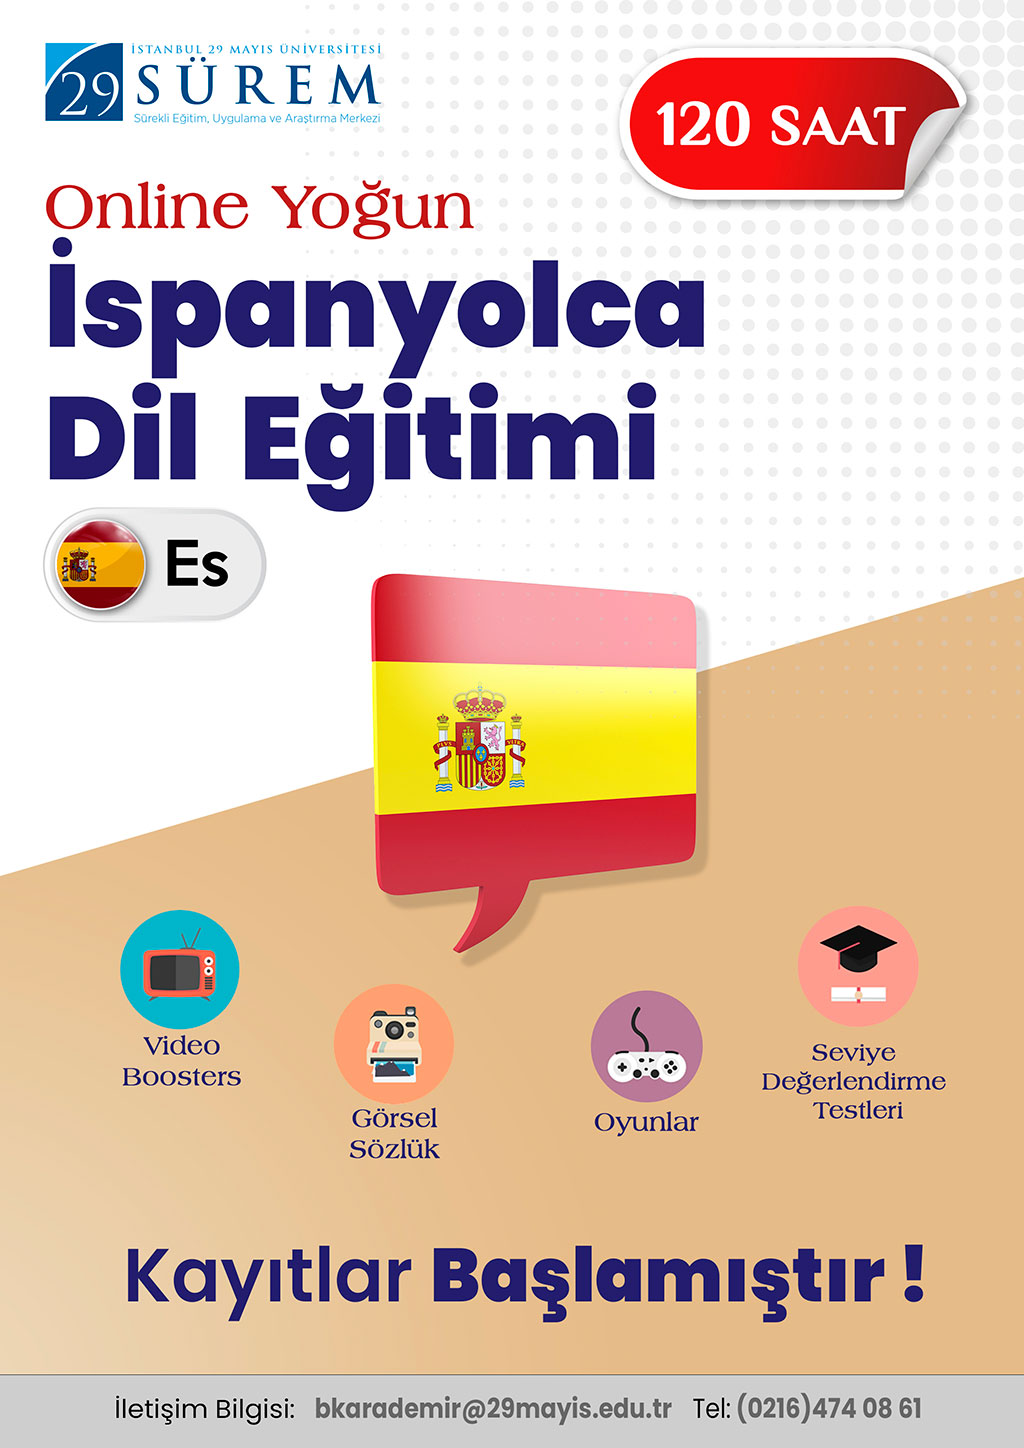 Online Yoğun İspanyolca Dil Eğitimi